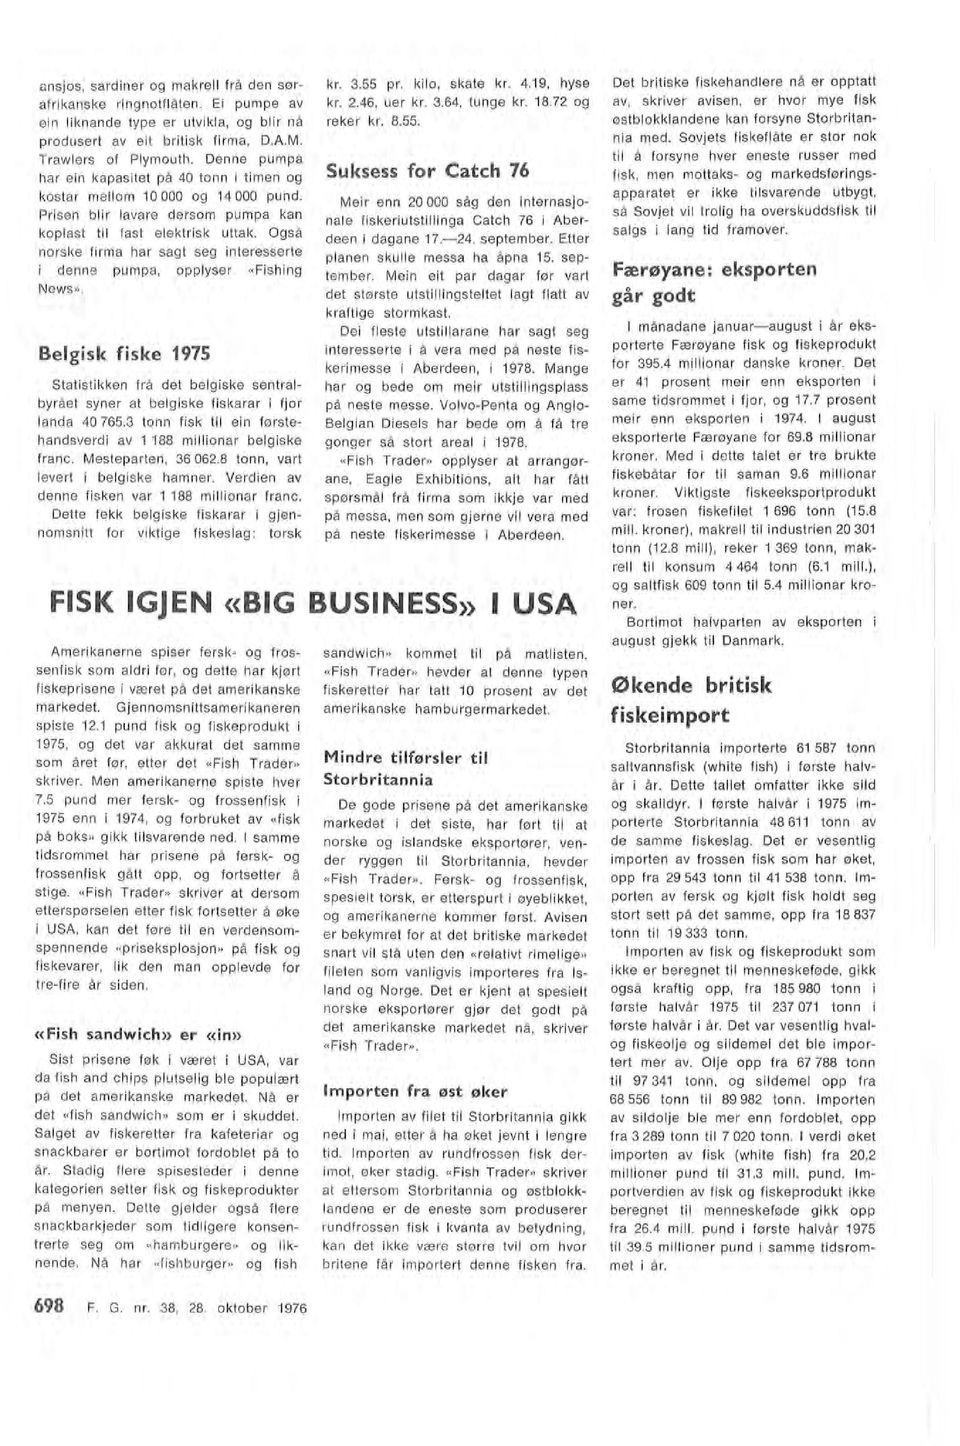 framover. Færøyane: ekspo rten går godt 698 F. G. nr. 8, 8. oktober 1976 Amerikanerne spiser fersk og frossenfisk som adri før, og dette har kjørt fiskeprisene i været på det amerikanske markedet.